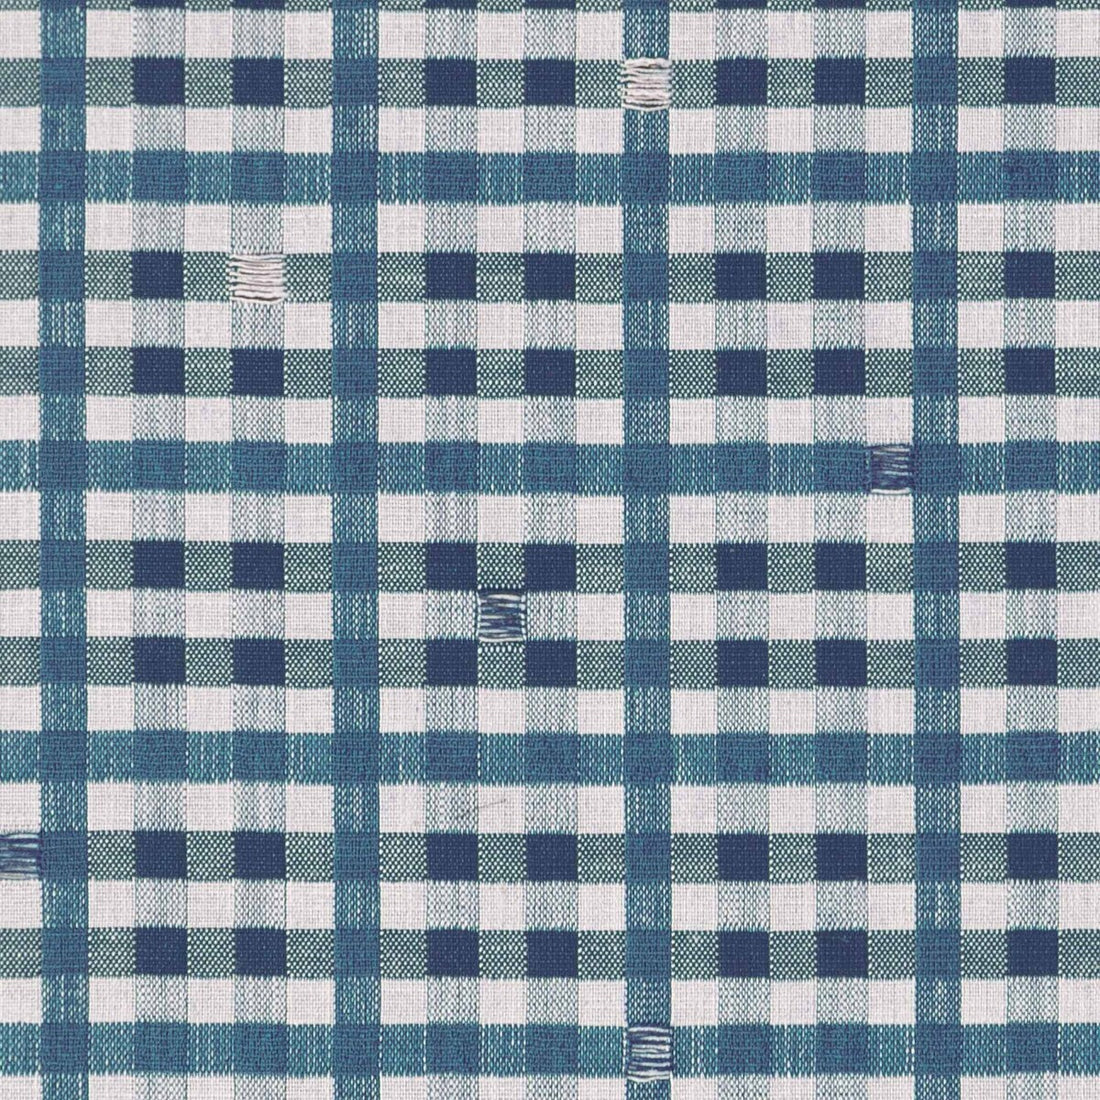 Trajano fabric in azul plomo color - pattern LCT1130.009.0 - by Gaston y Daniela in the Lorenzo Castillo IX Hesperia collection